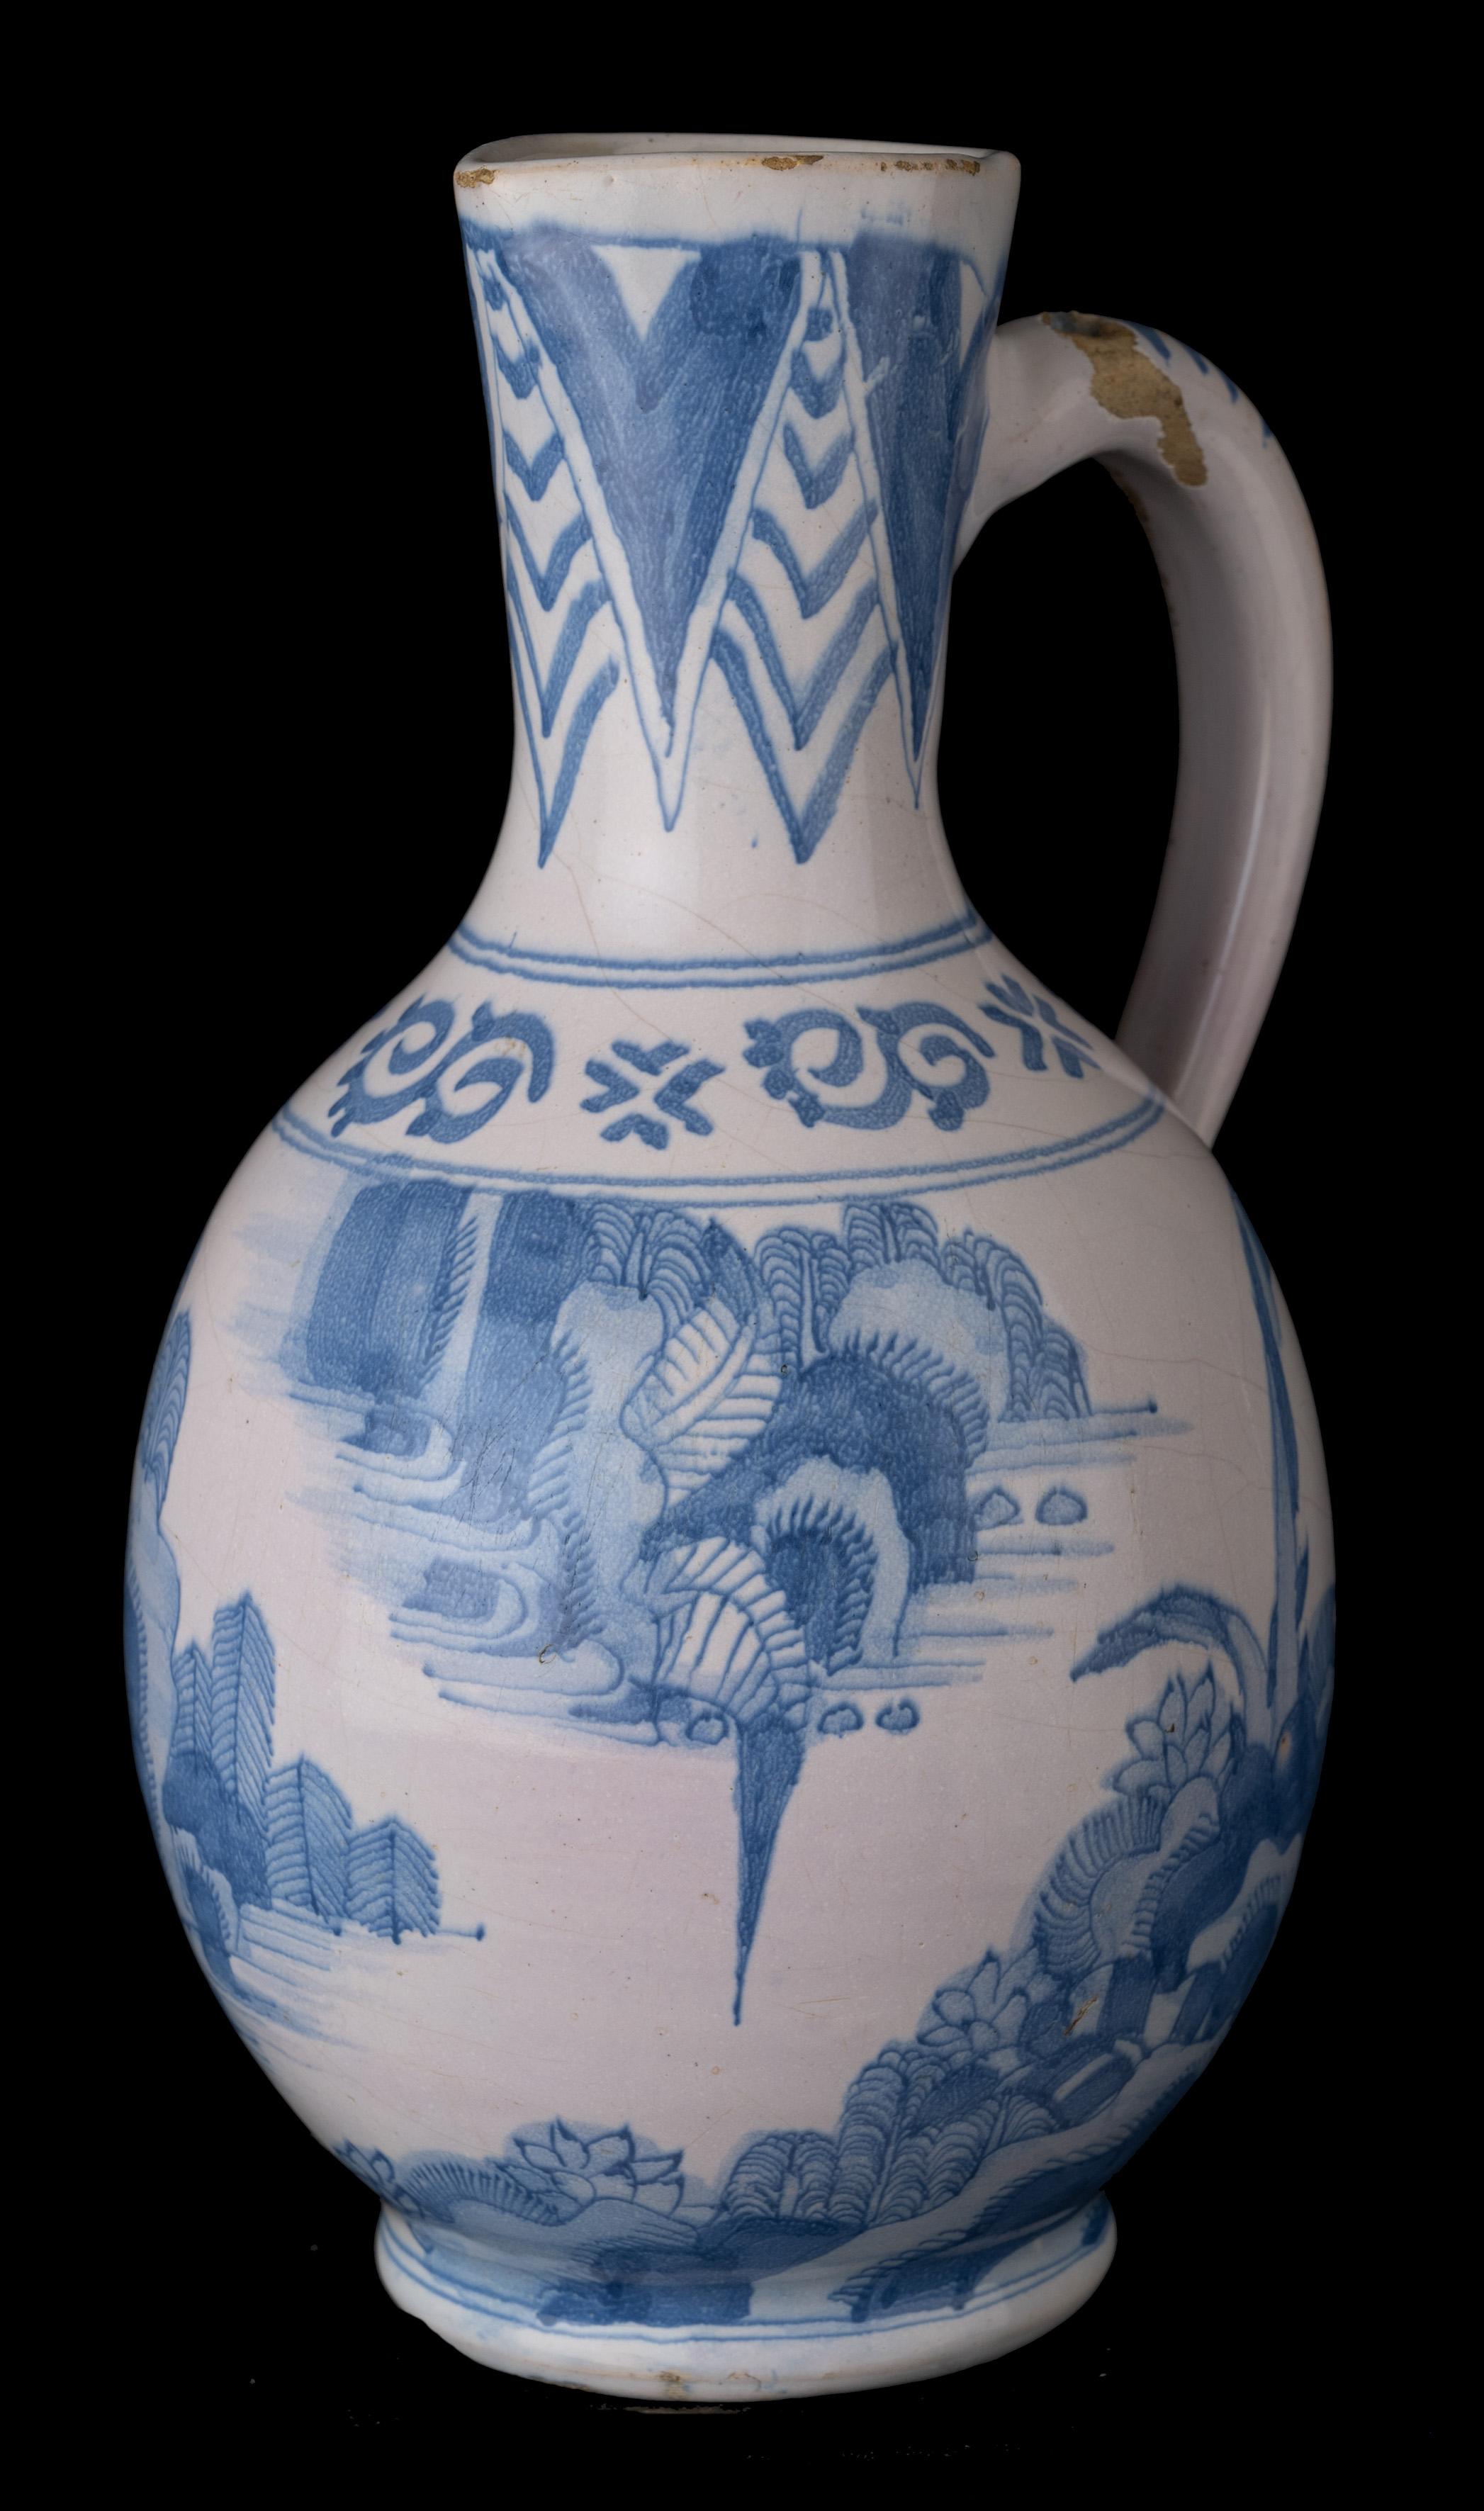 Blauer und weißer Chinoiserie-Weinkrug Delft, 1650-1670 

Der eiförmige Weinkrug steht auf einem taillierten Fuß und hat einen leicht konischen Hals mit einem Ausguss und einem ohrförmigen Henkel, der in einem Rattenschwanz endet. Die Oberseite